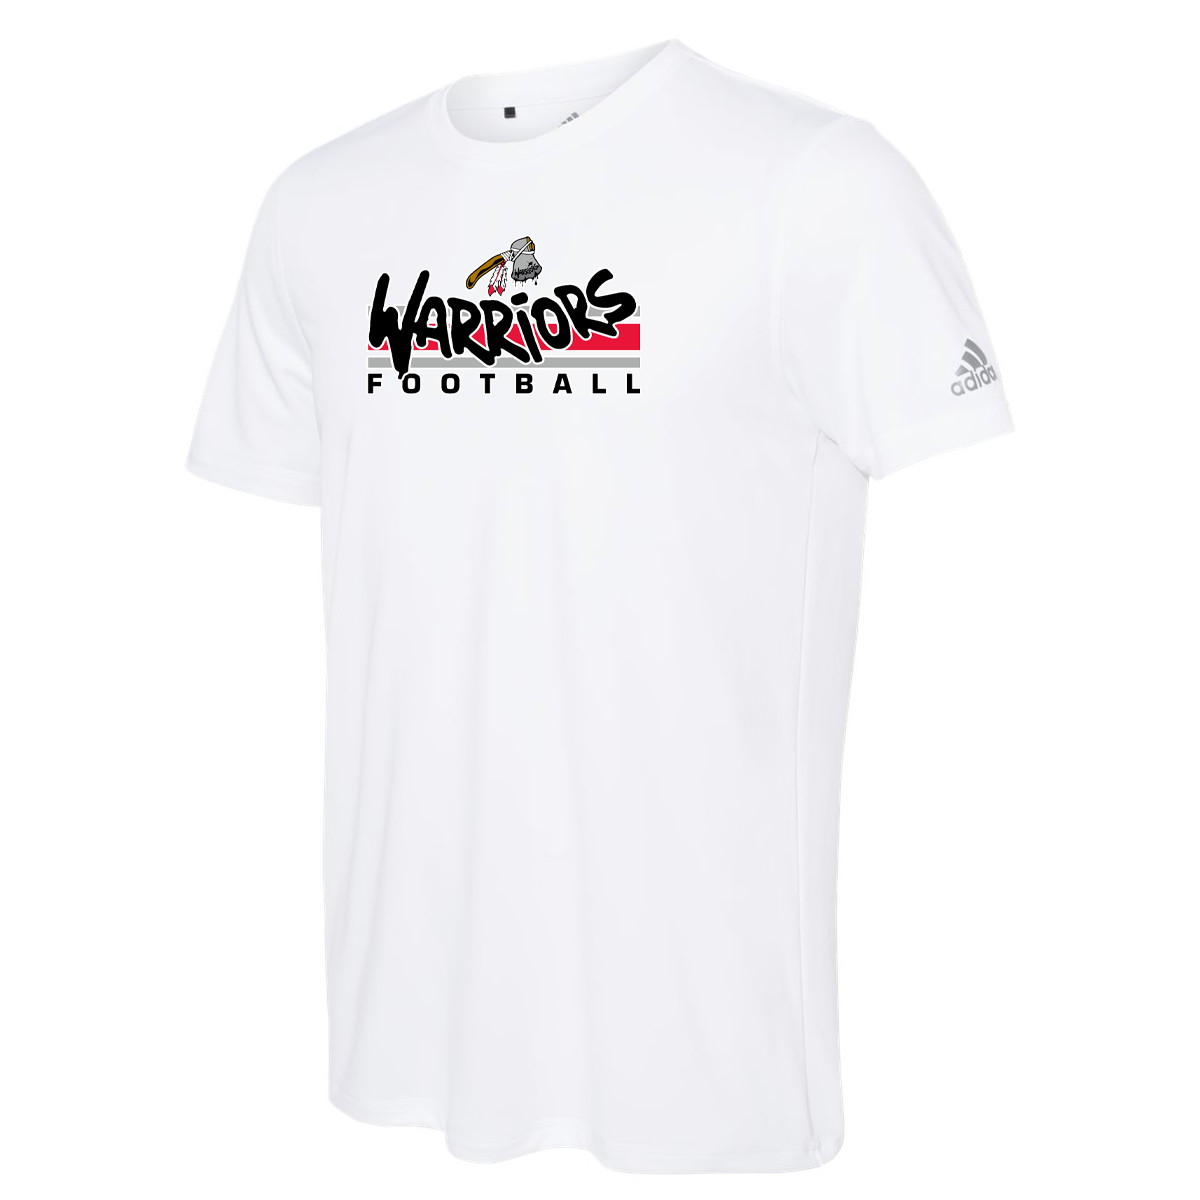 WV Warriors Football Adidas Sport T-Shirt